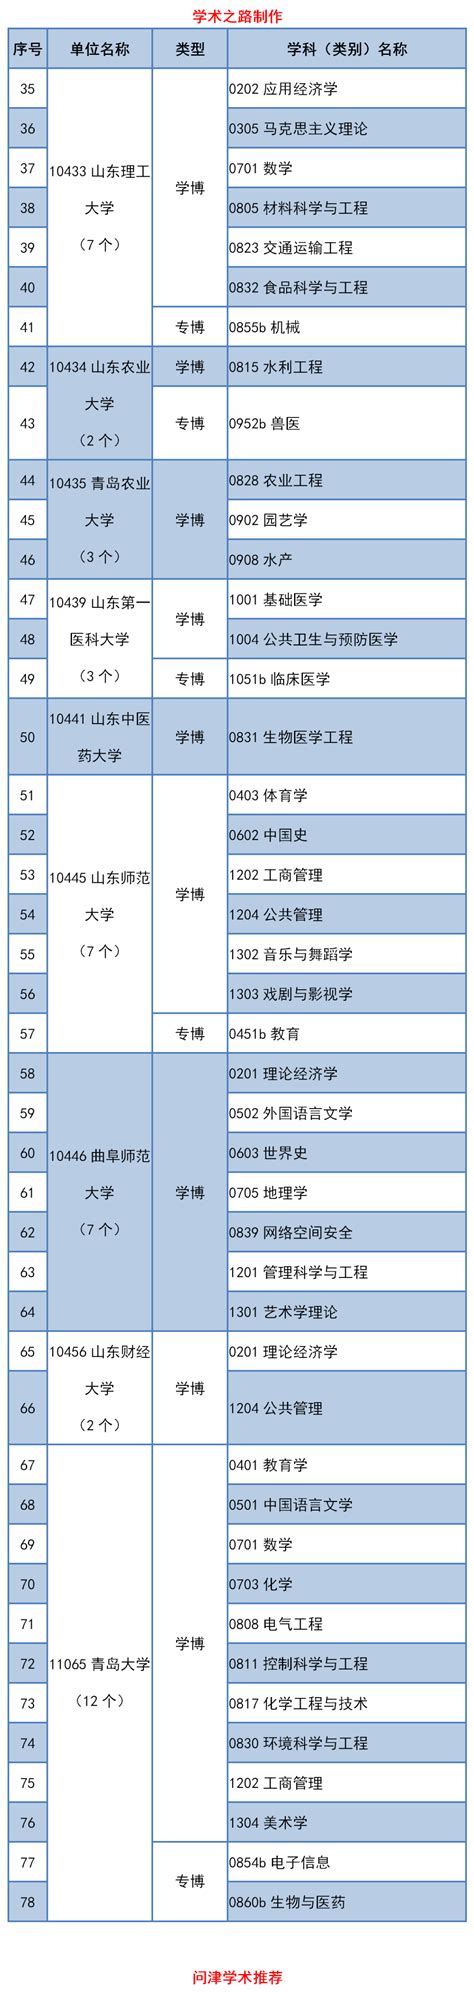 山东省2020年学位授权审核推荐名单及申请材料公示 | 自由微信 | FreeWeChat